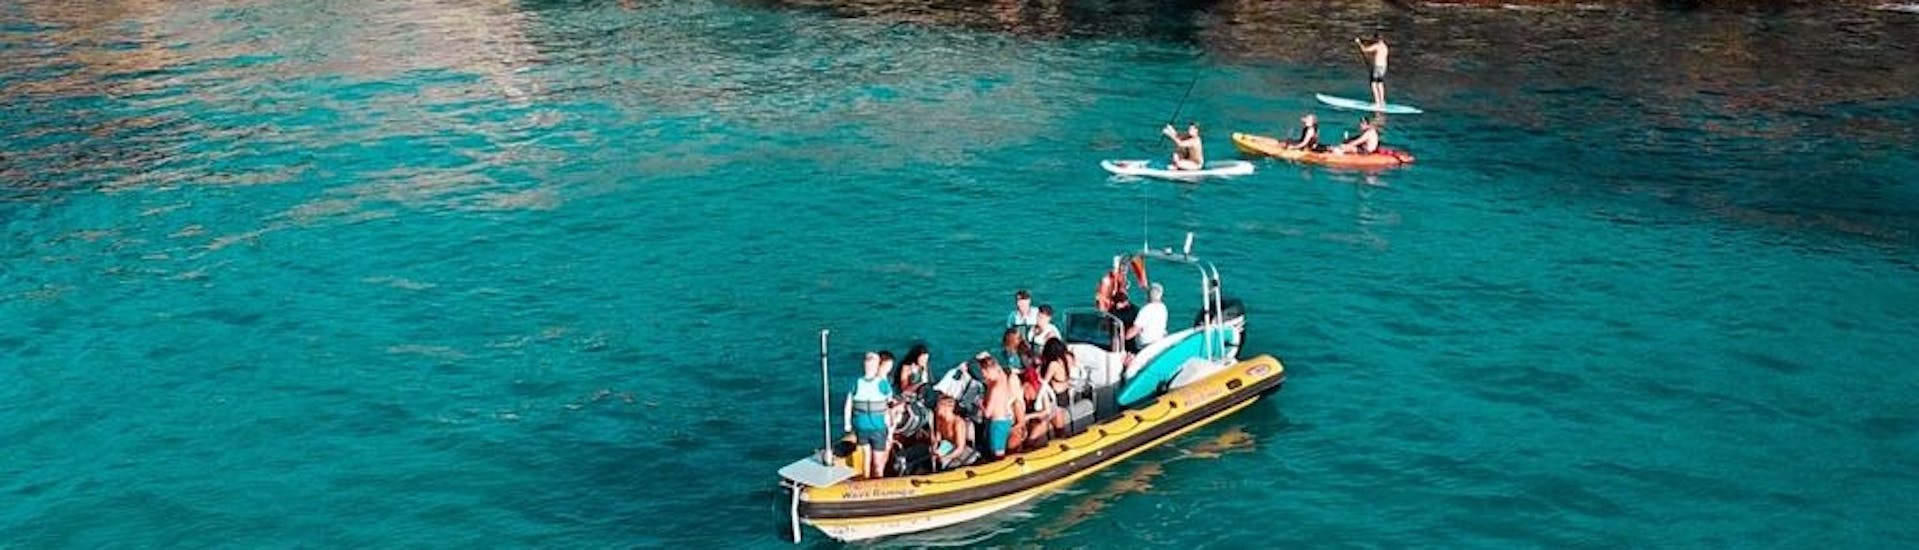 Deelnemers aan een speedboot die stoppen om te zwemmen in de turquoise wateren in de baai van Alcudia tijdens een boottocht van Can Picafort naar het natuurpark Llevant met North Coast Adventure Mallorca.